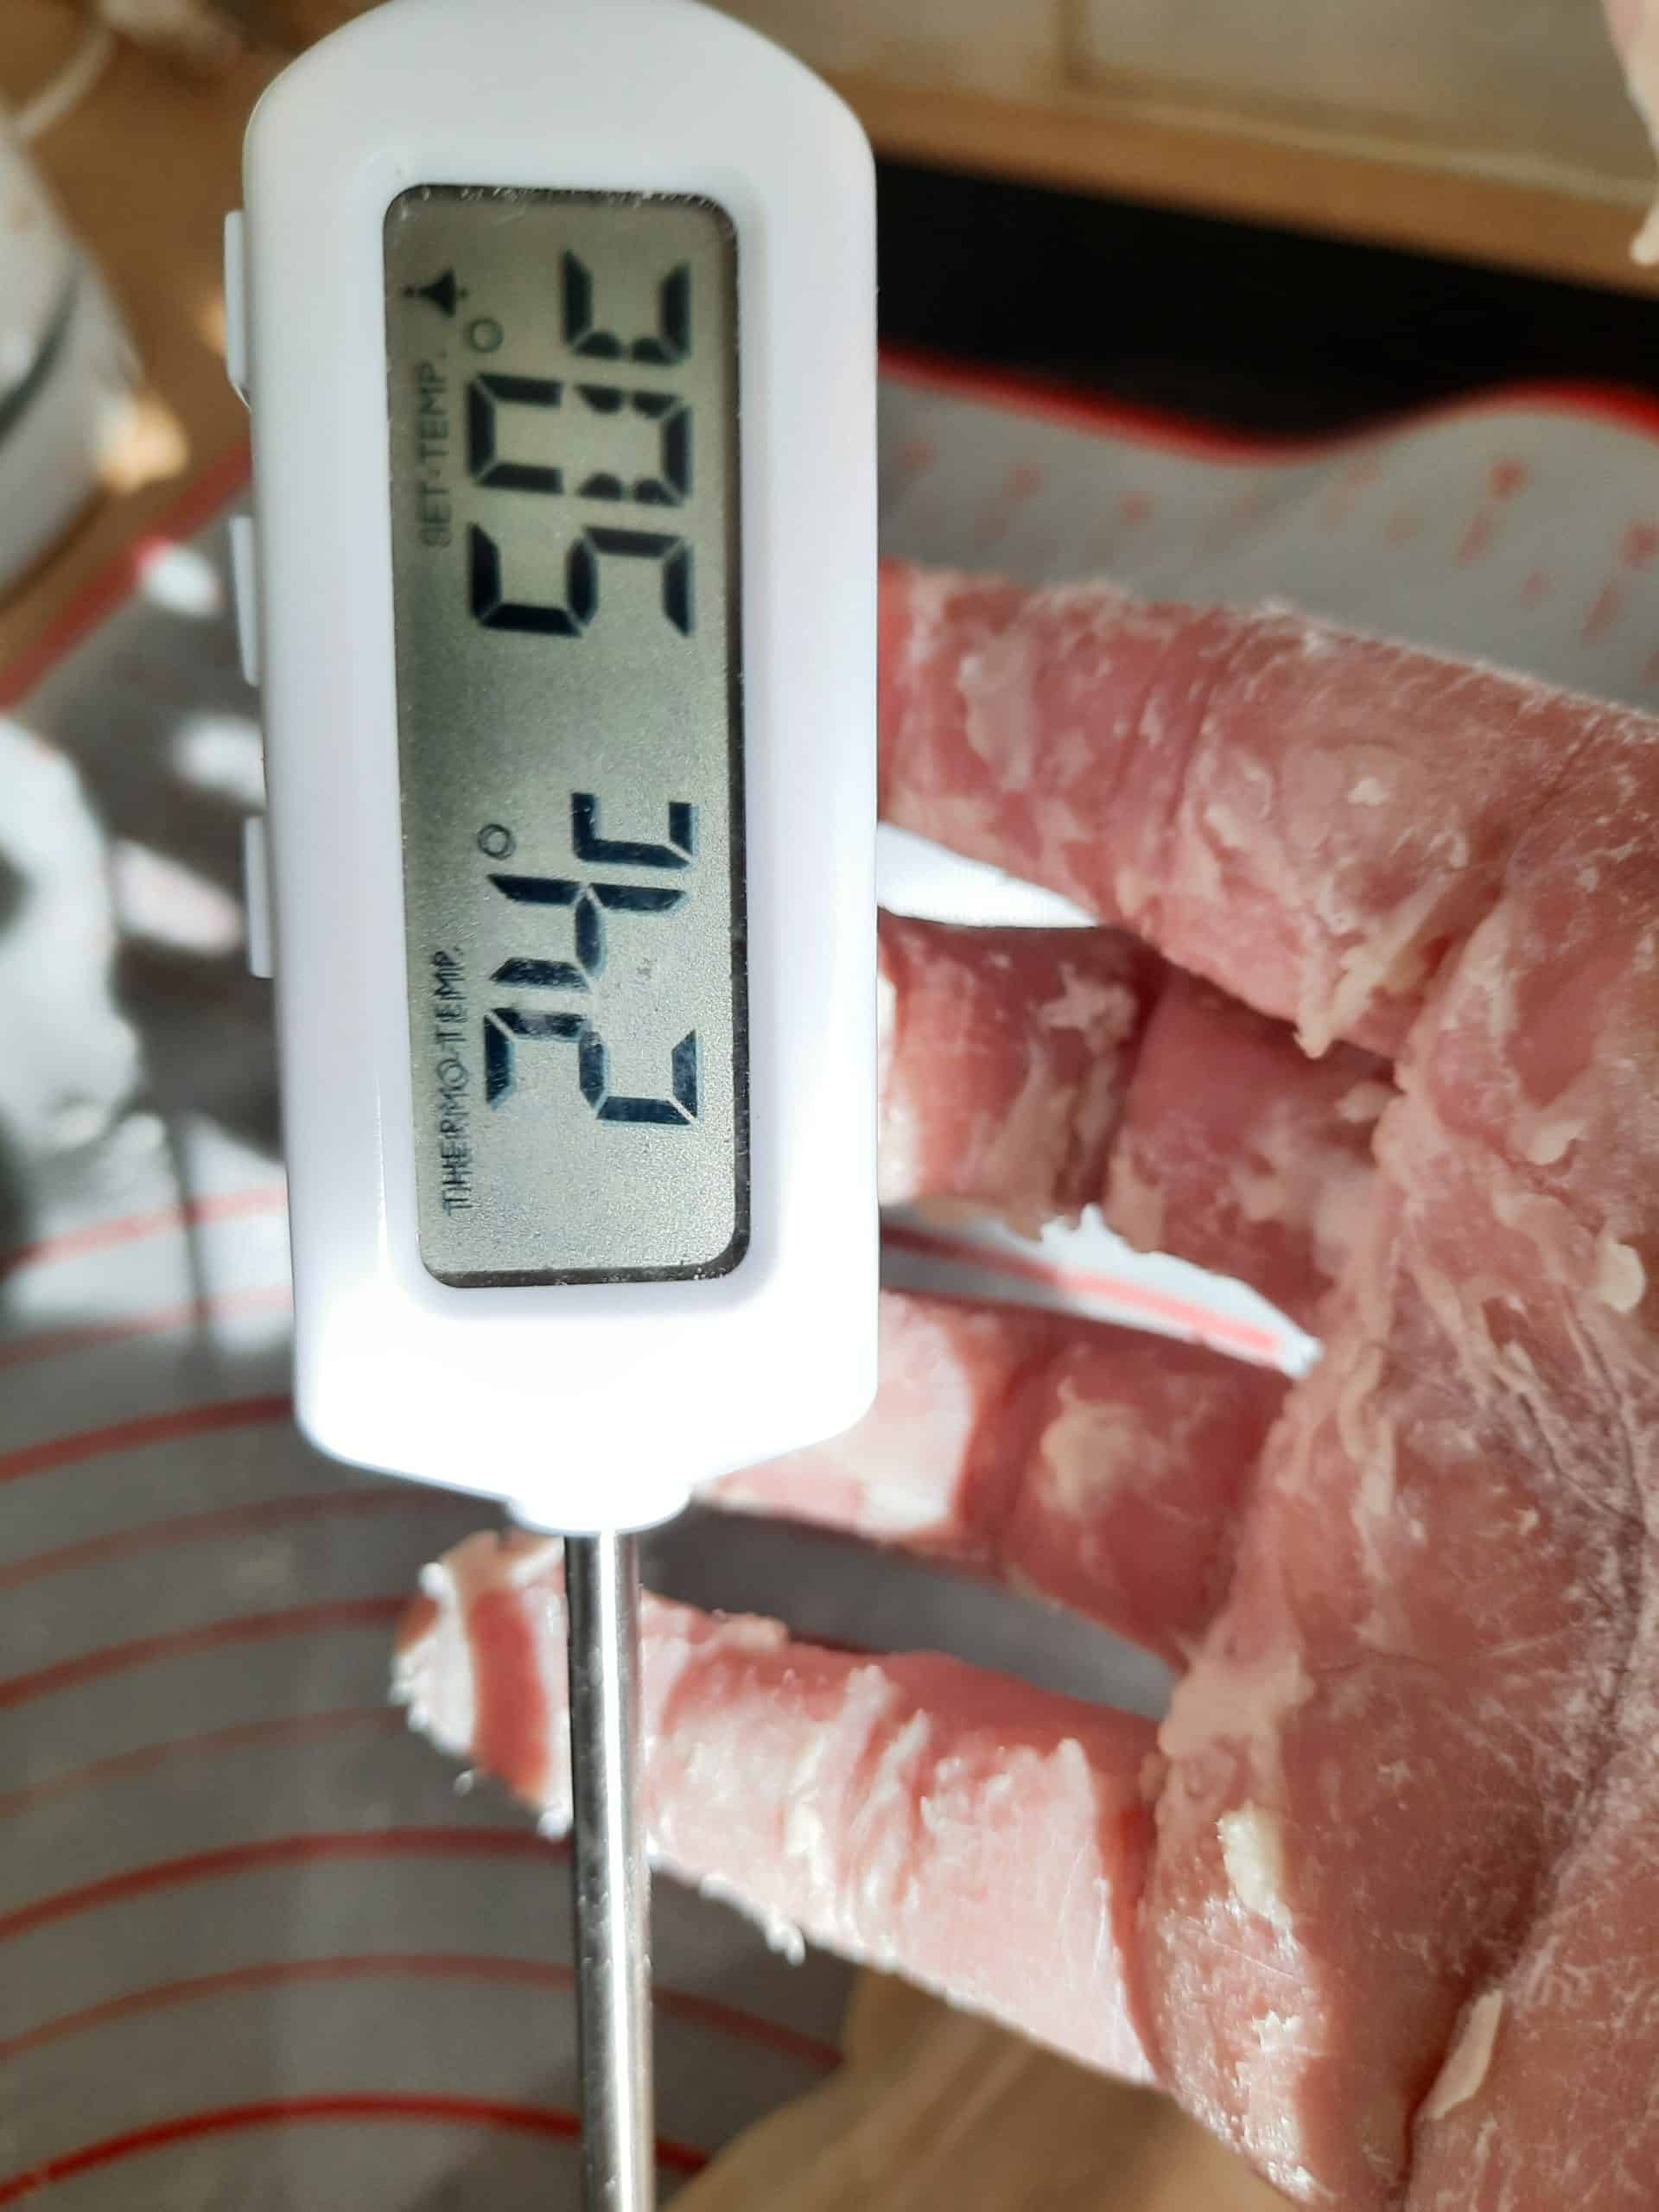 溫度介於24-26度都是成功的麵團